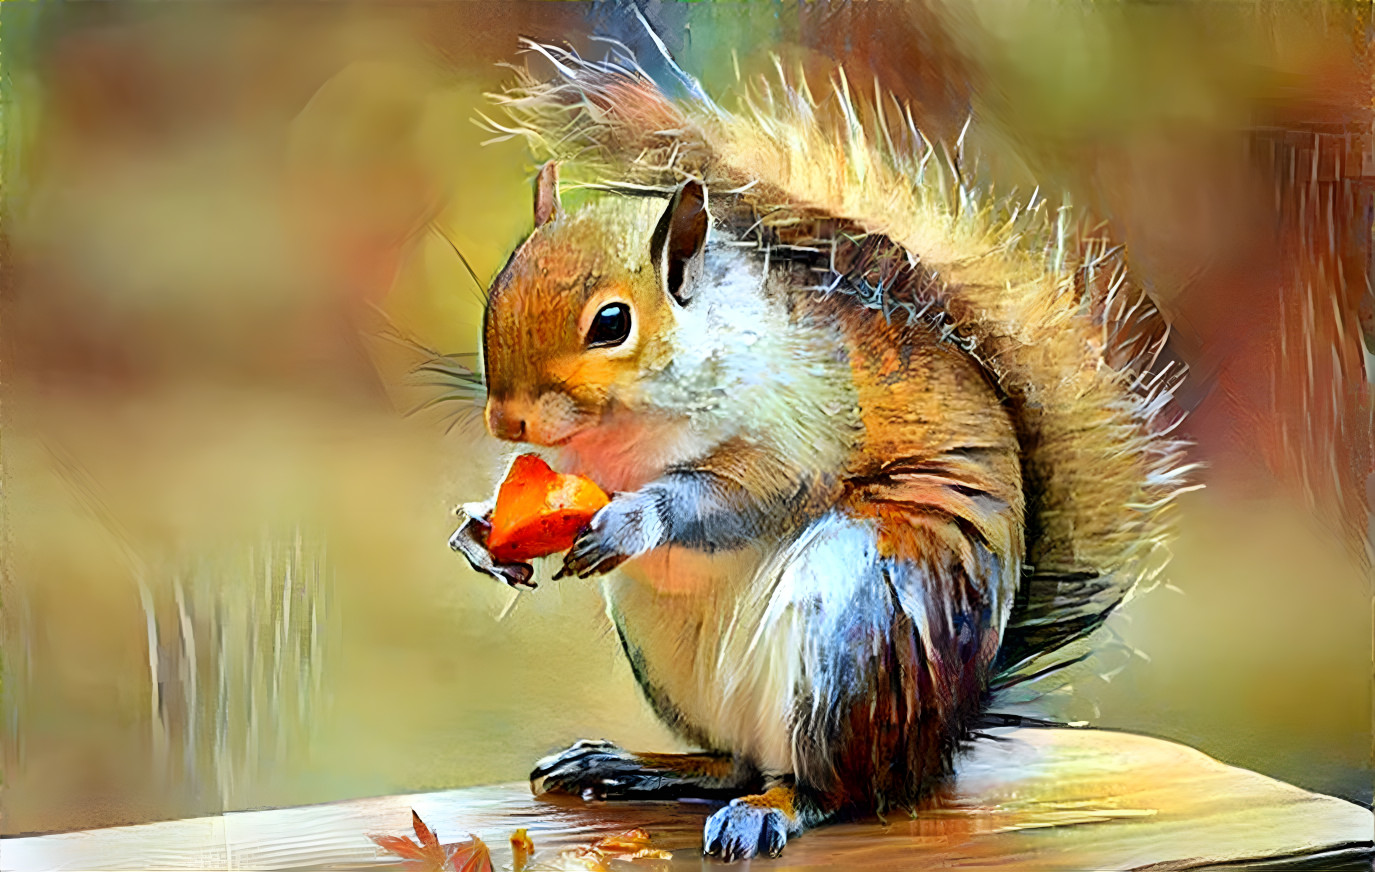 Sweet little squirrel